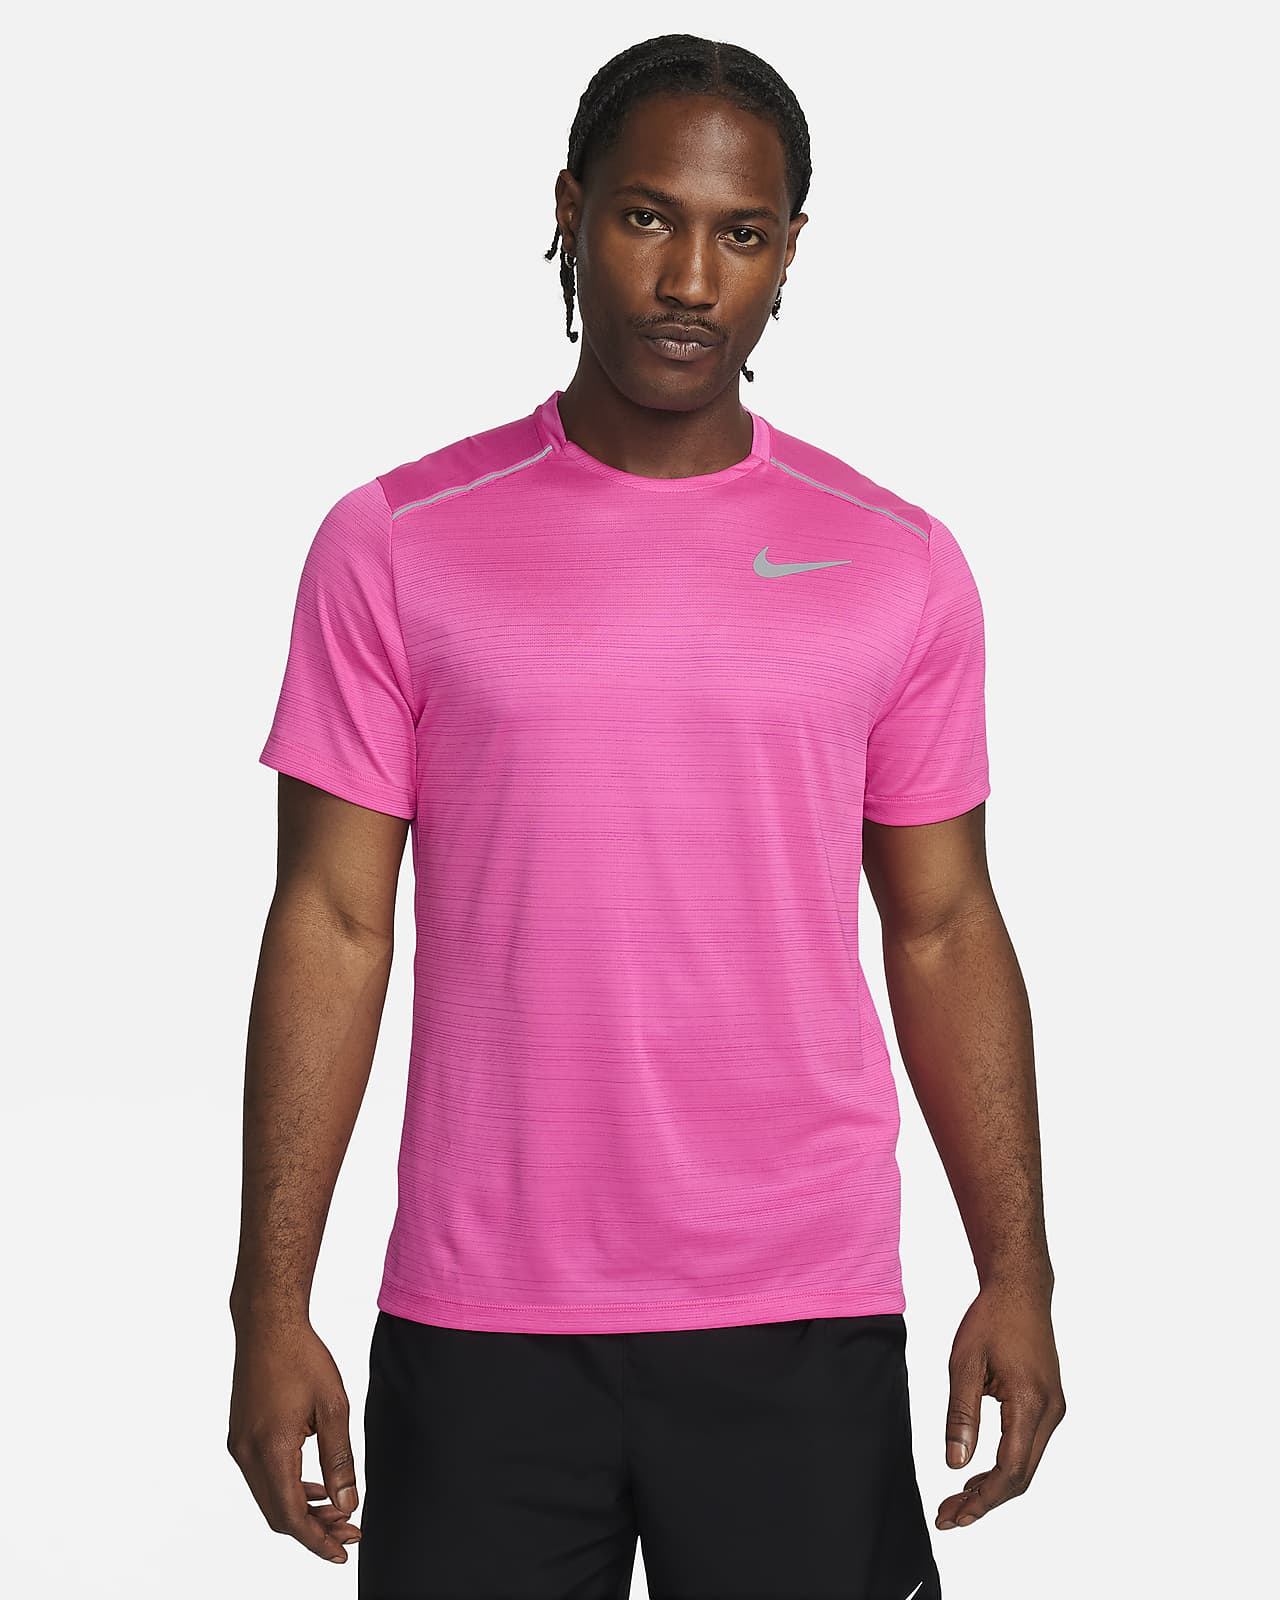 Ανδρική κοντομάνικη μπλούζα για τρέξιμο Nike Miler